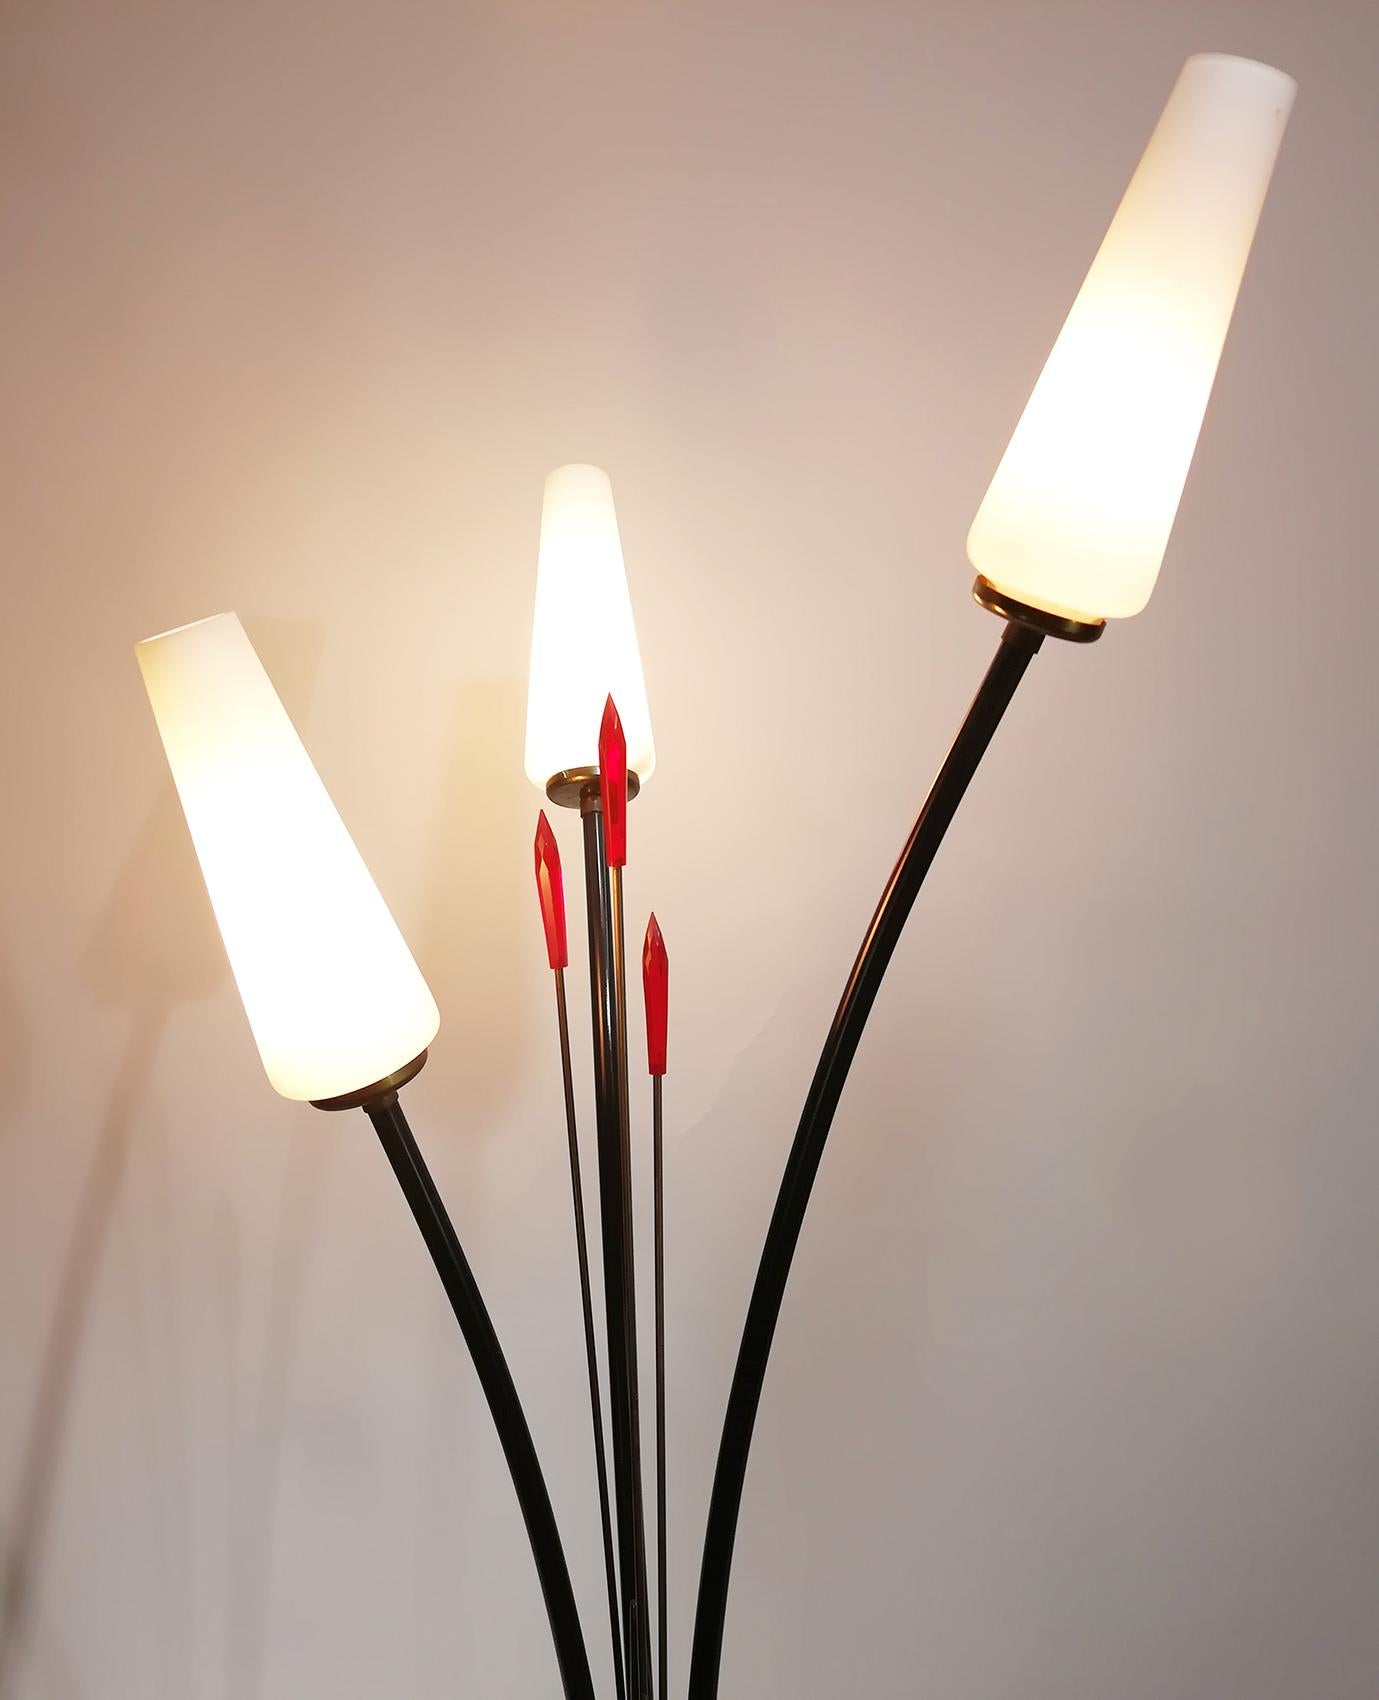 Eine tolle Stehlampe im Stil von Stilnovo mit drei Glasschirmen und roter Lucite-Lanze, hergestellt in den 1950er Jahren in Italien. Diese elegante blumenartige Lampe ist aus Messing gefertigt.
Der sanfte und elegante Look ist charakteristisch für